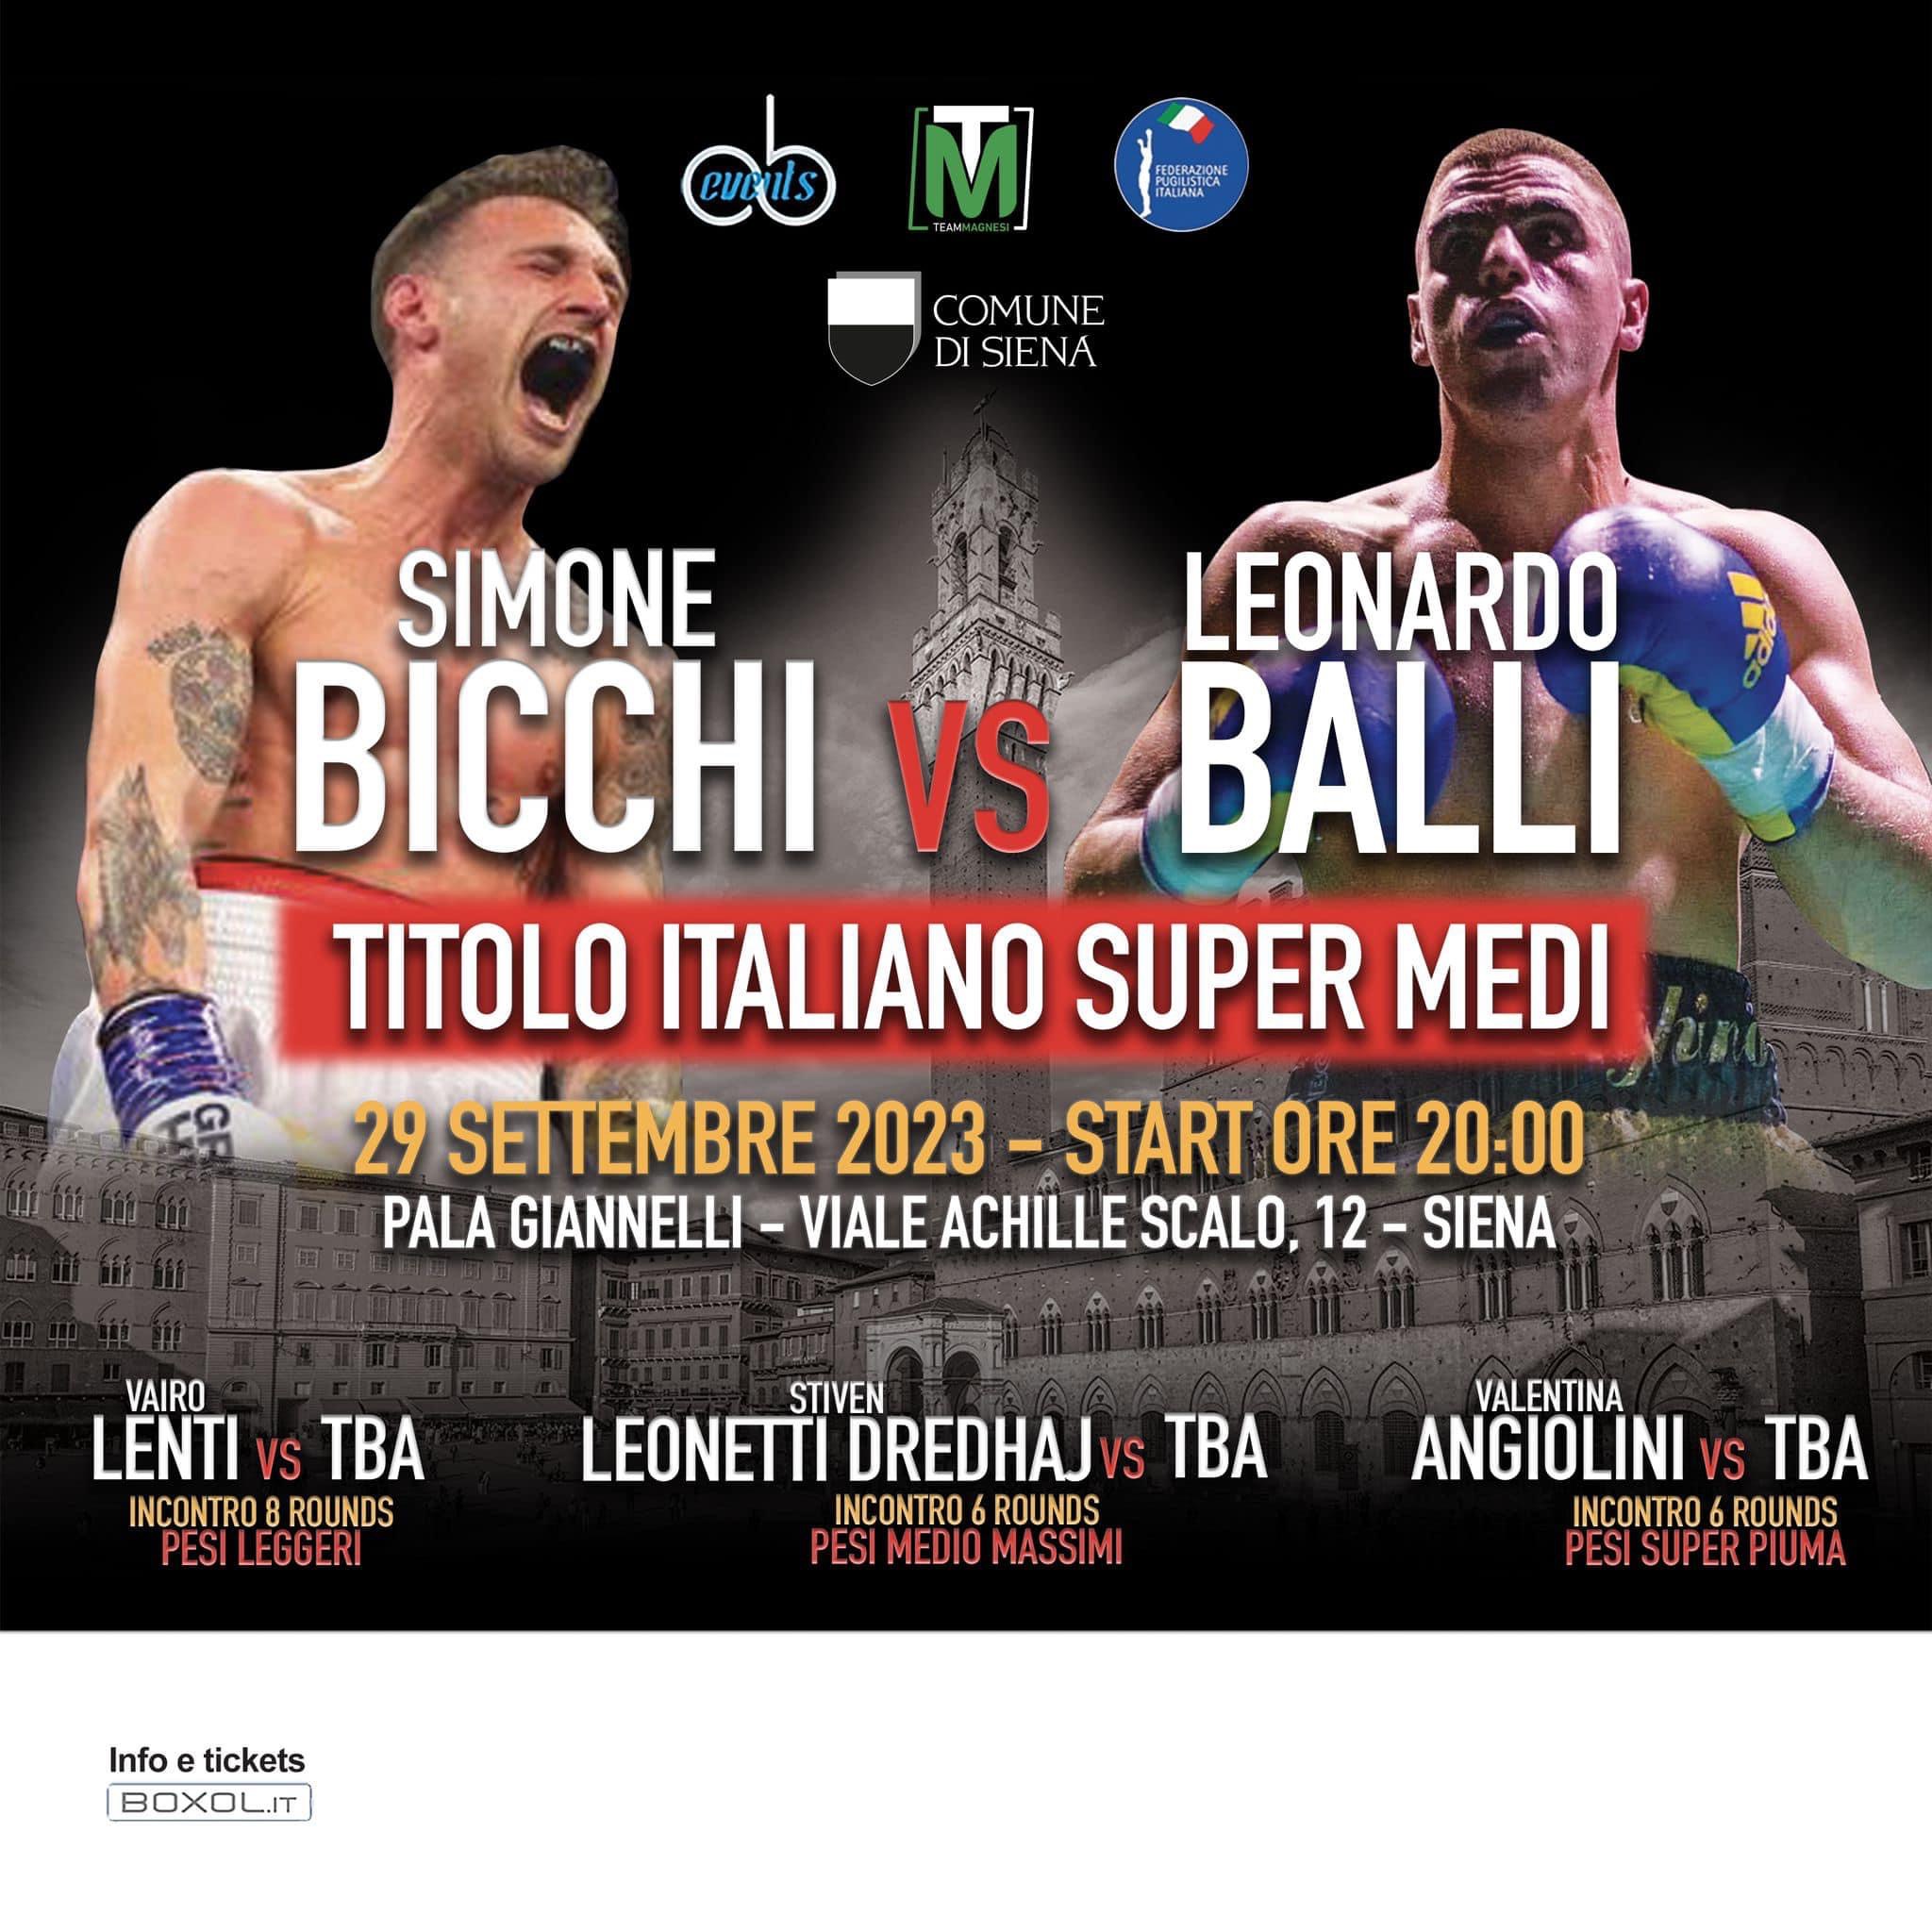 Il 29 settembre a Siena Gran Derby Toscano Bicchi vs Balli per il Titolo Italiano Supermedi